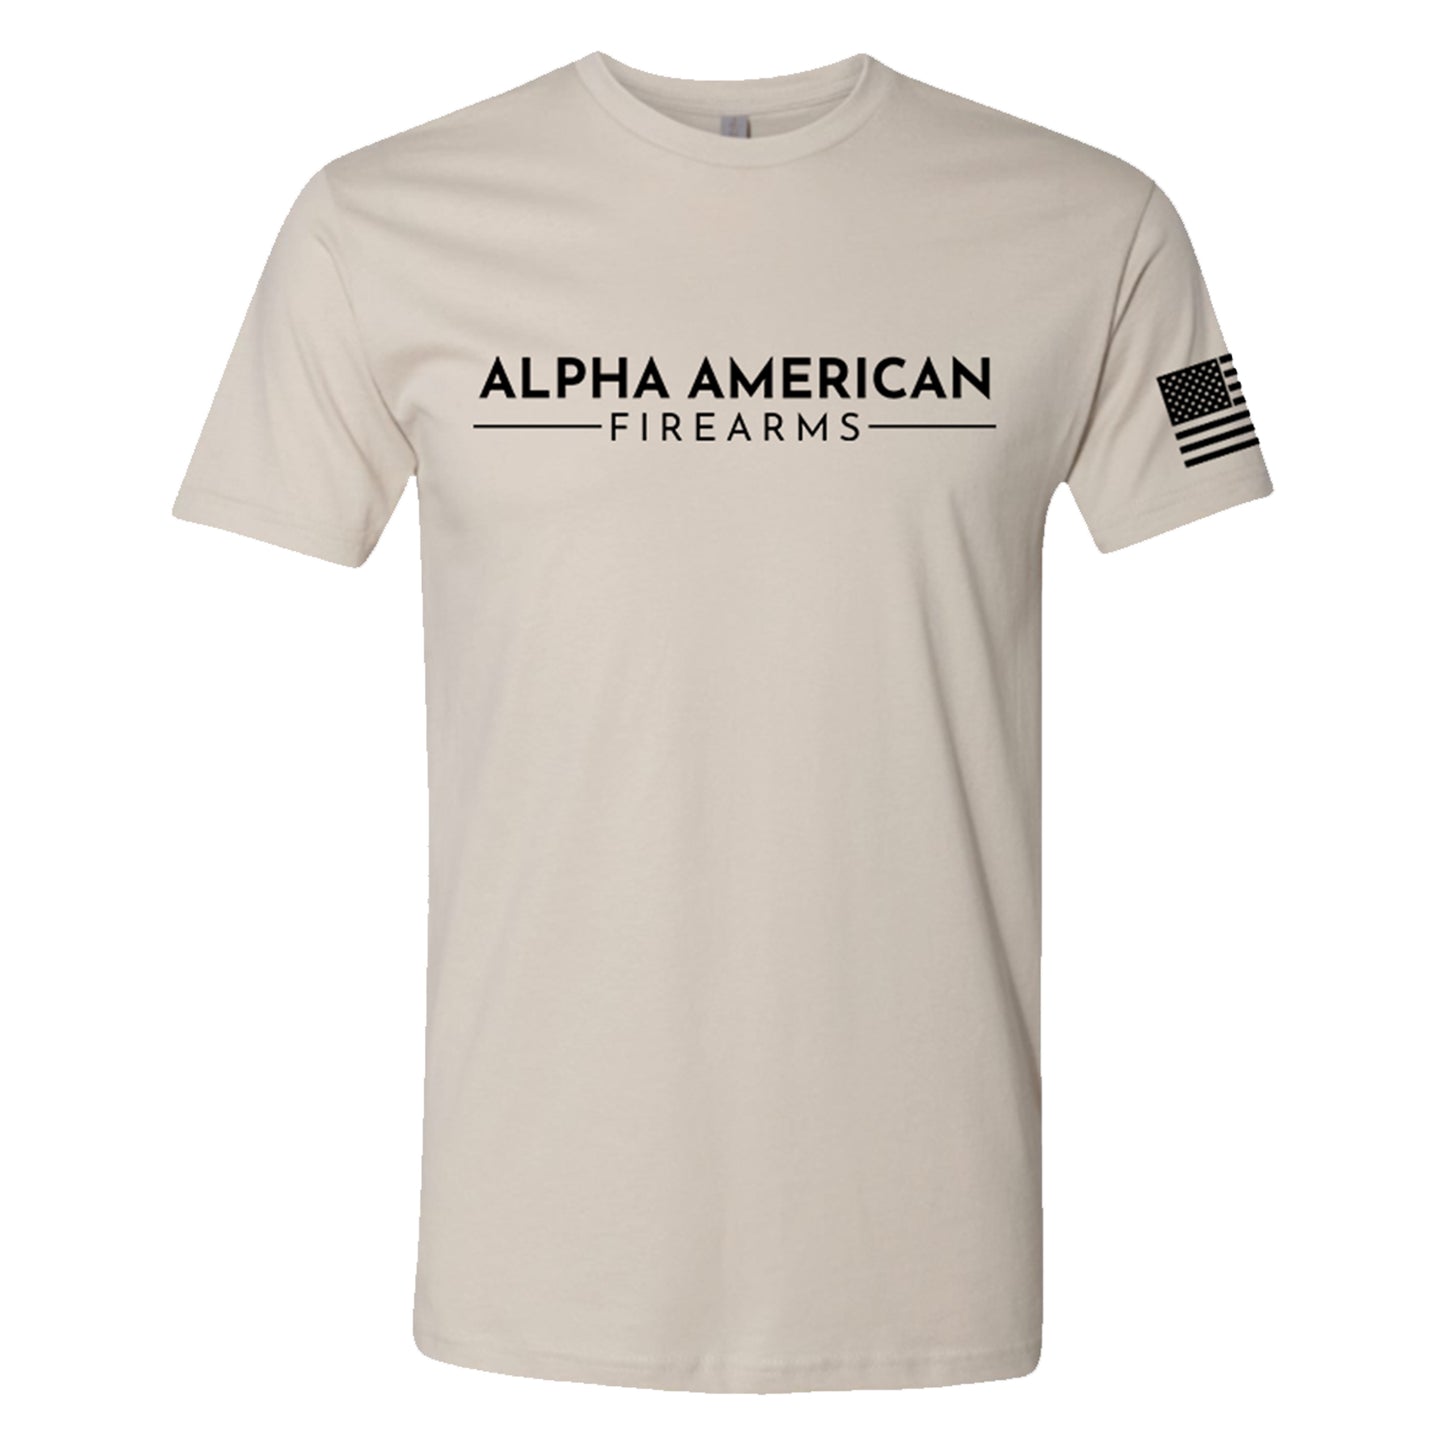 Alpha American Firearms, Short Sleeve, Sand